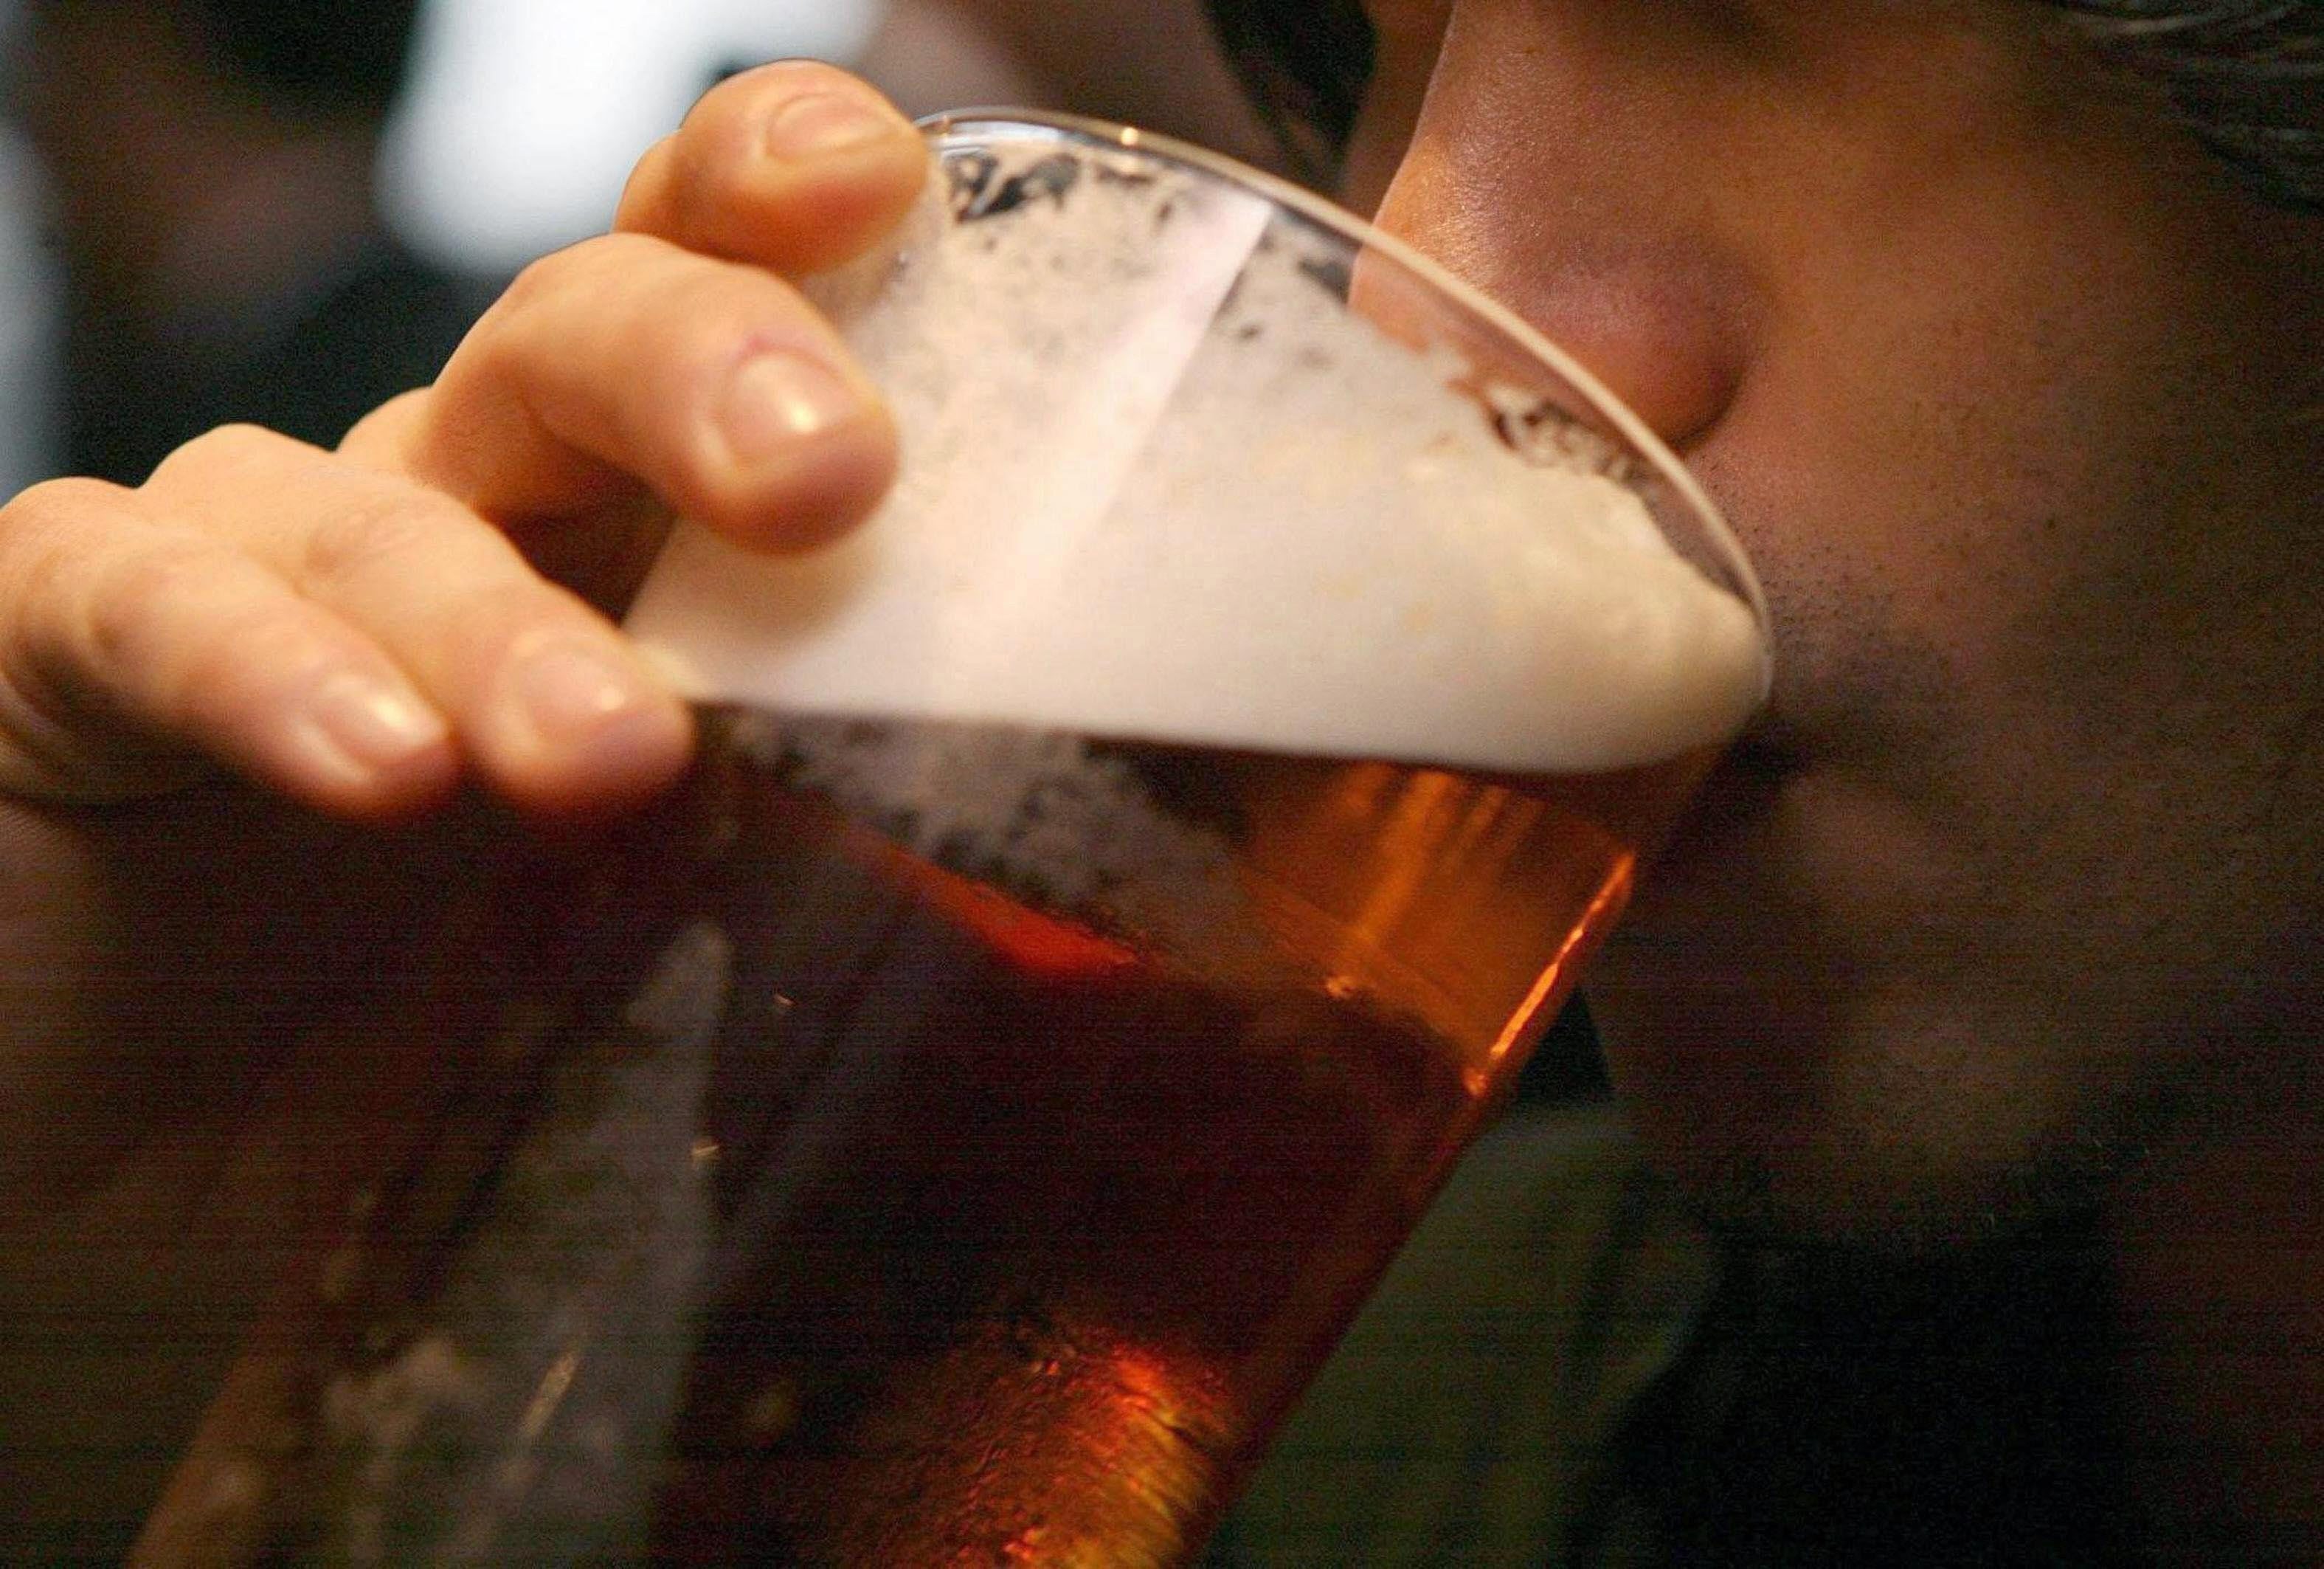 Un británico apura una pinta de cerveza en una imagen de archivo